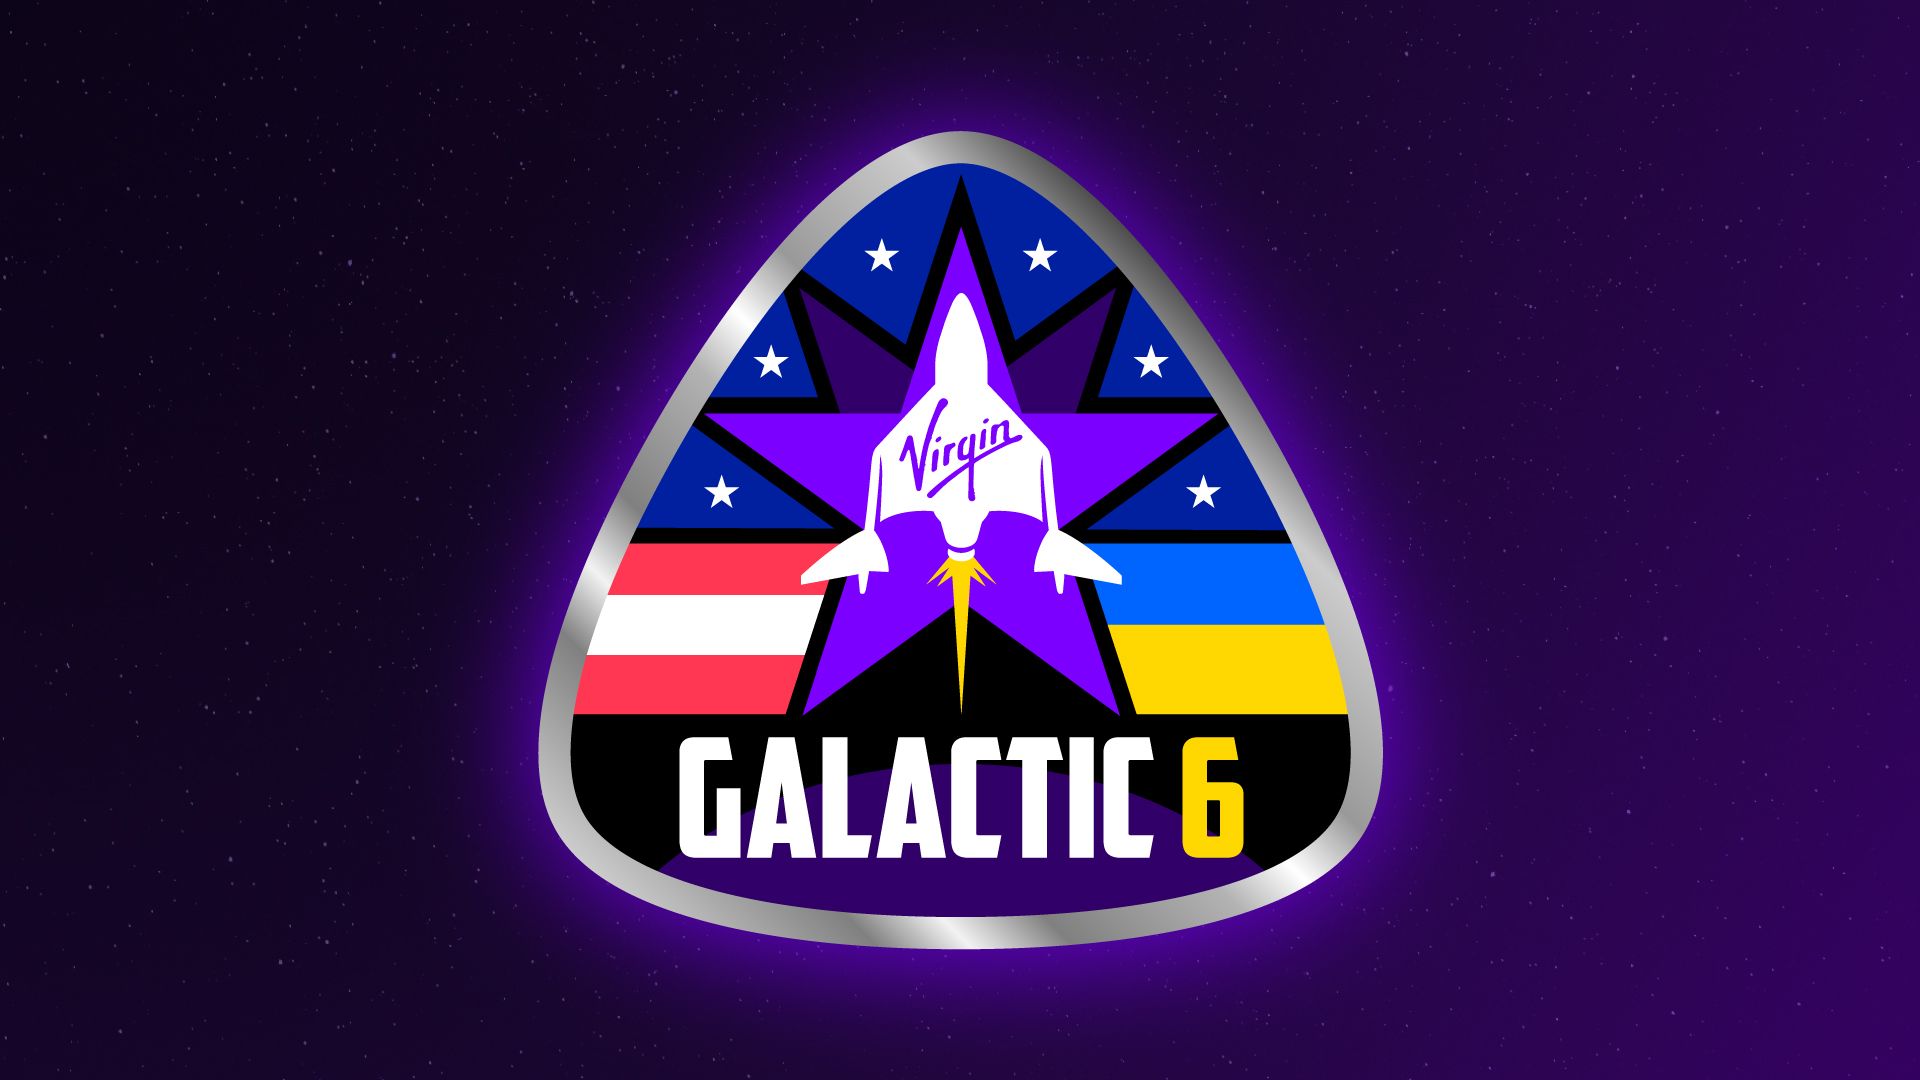 un parche de misión que muestra un dibujo de un avión espacial en blanco frente a una estrella violeta de cinco puntas, con las palabras 